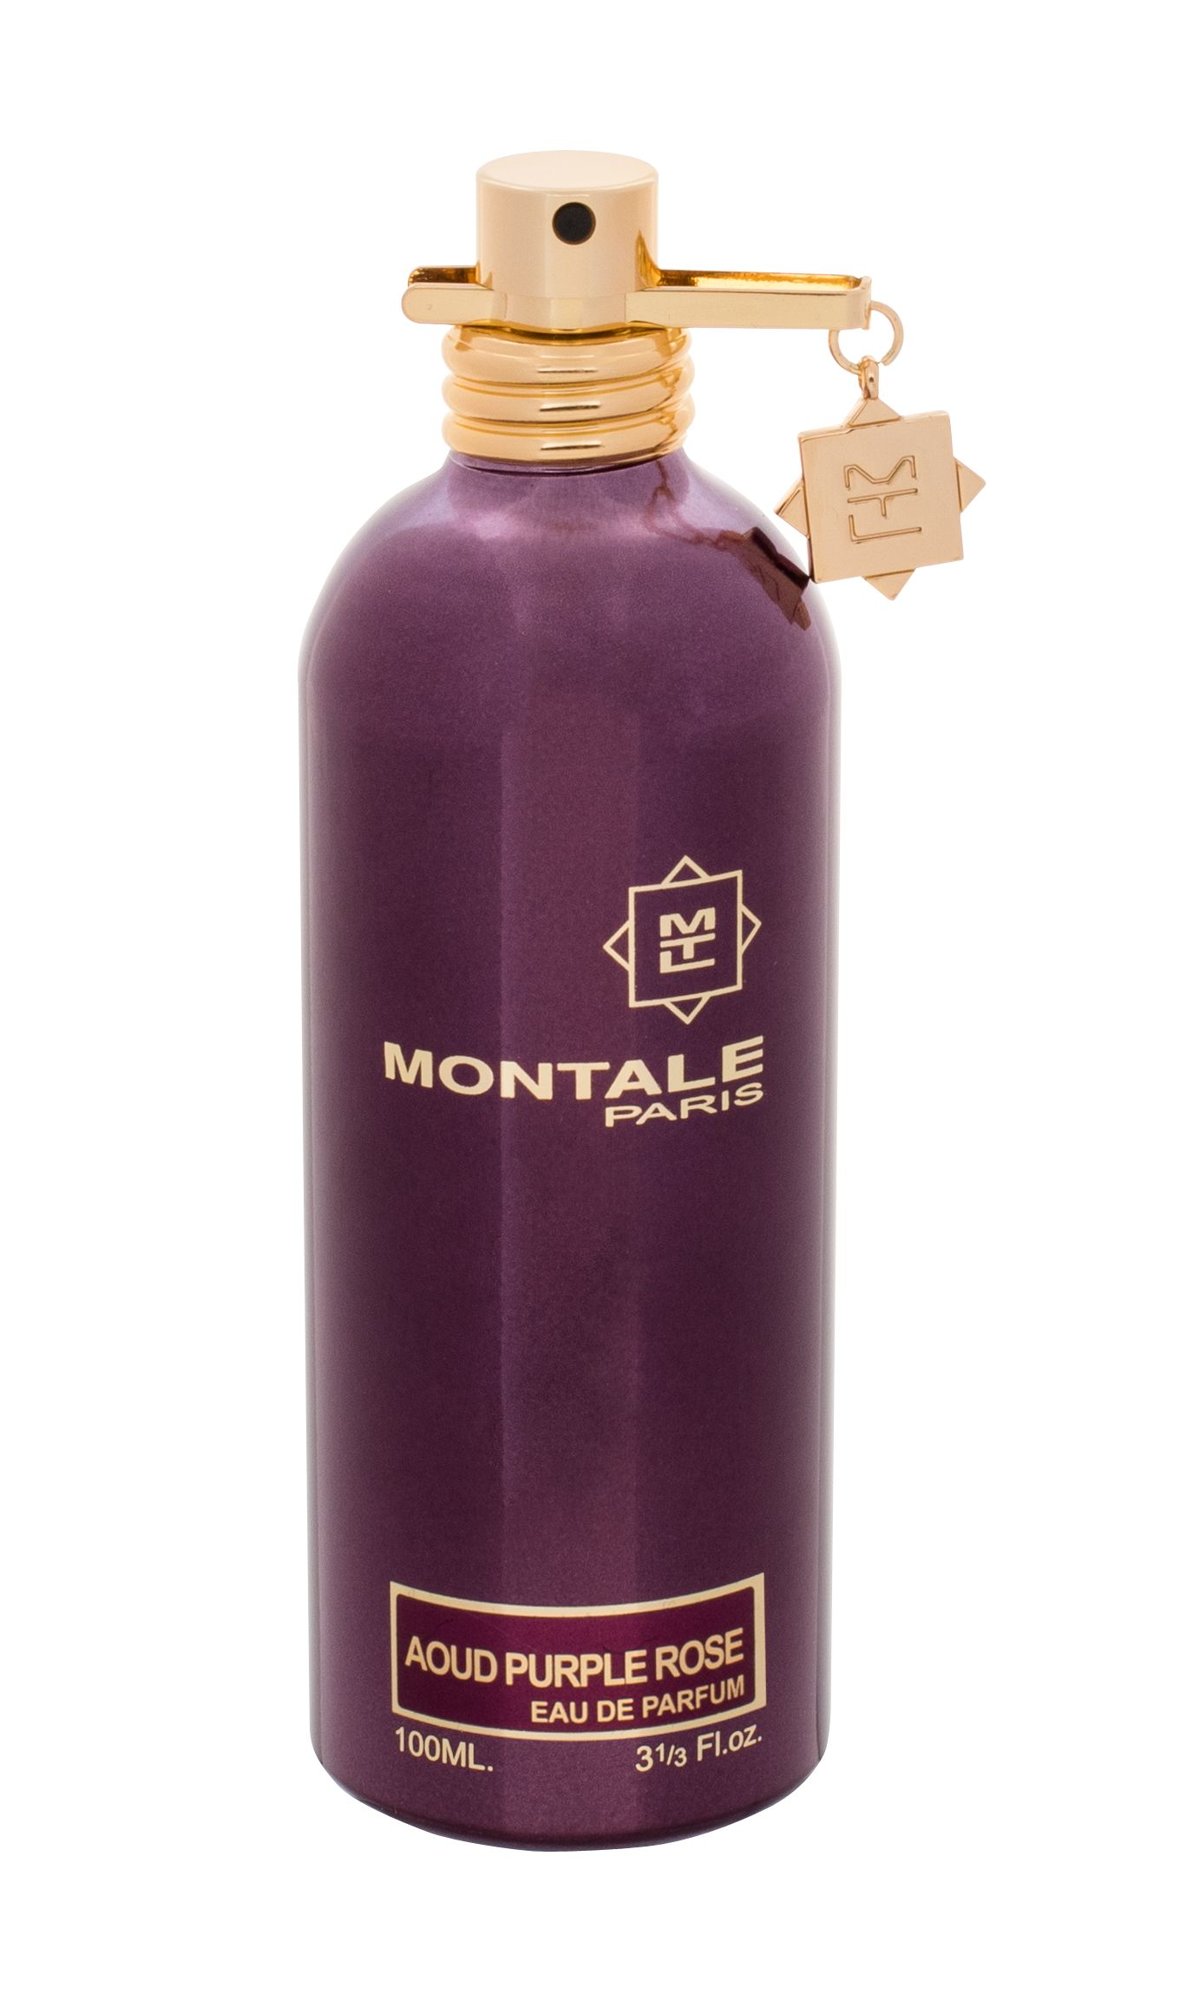 Montale Paris Aoud Purple Rose